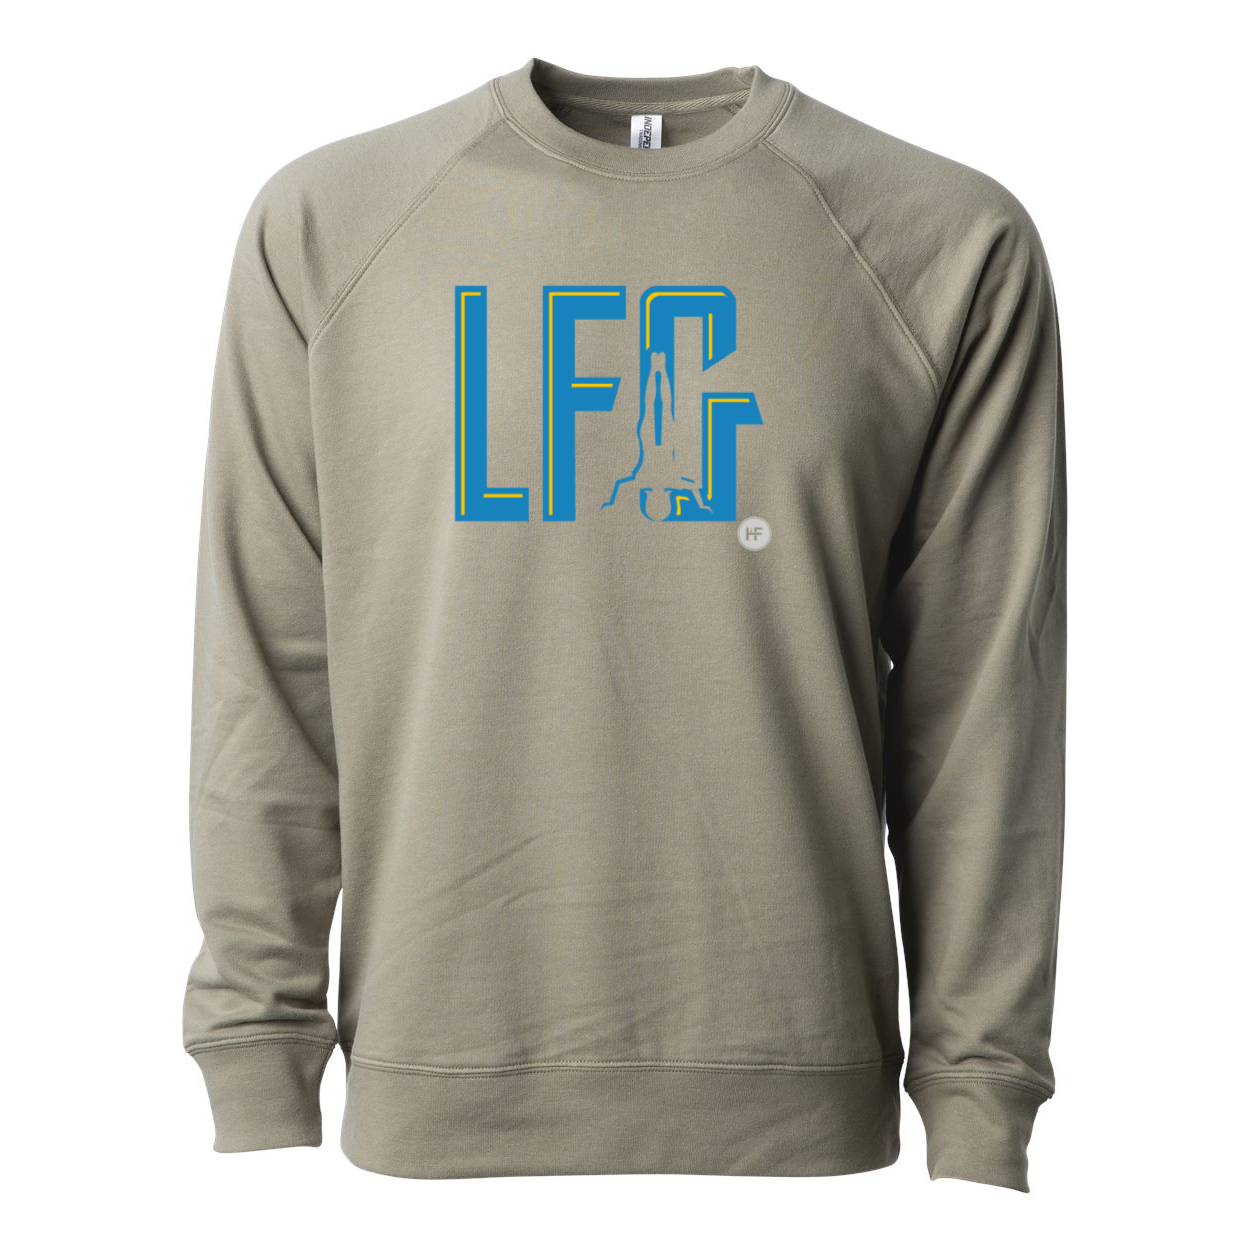 LFG Icon Unisex Lightweight Sweatshirt